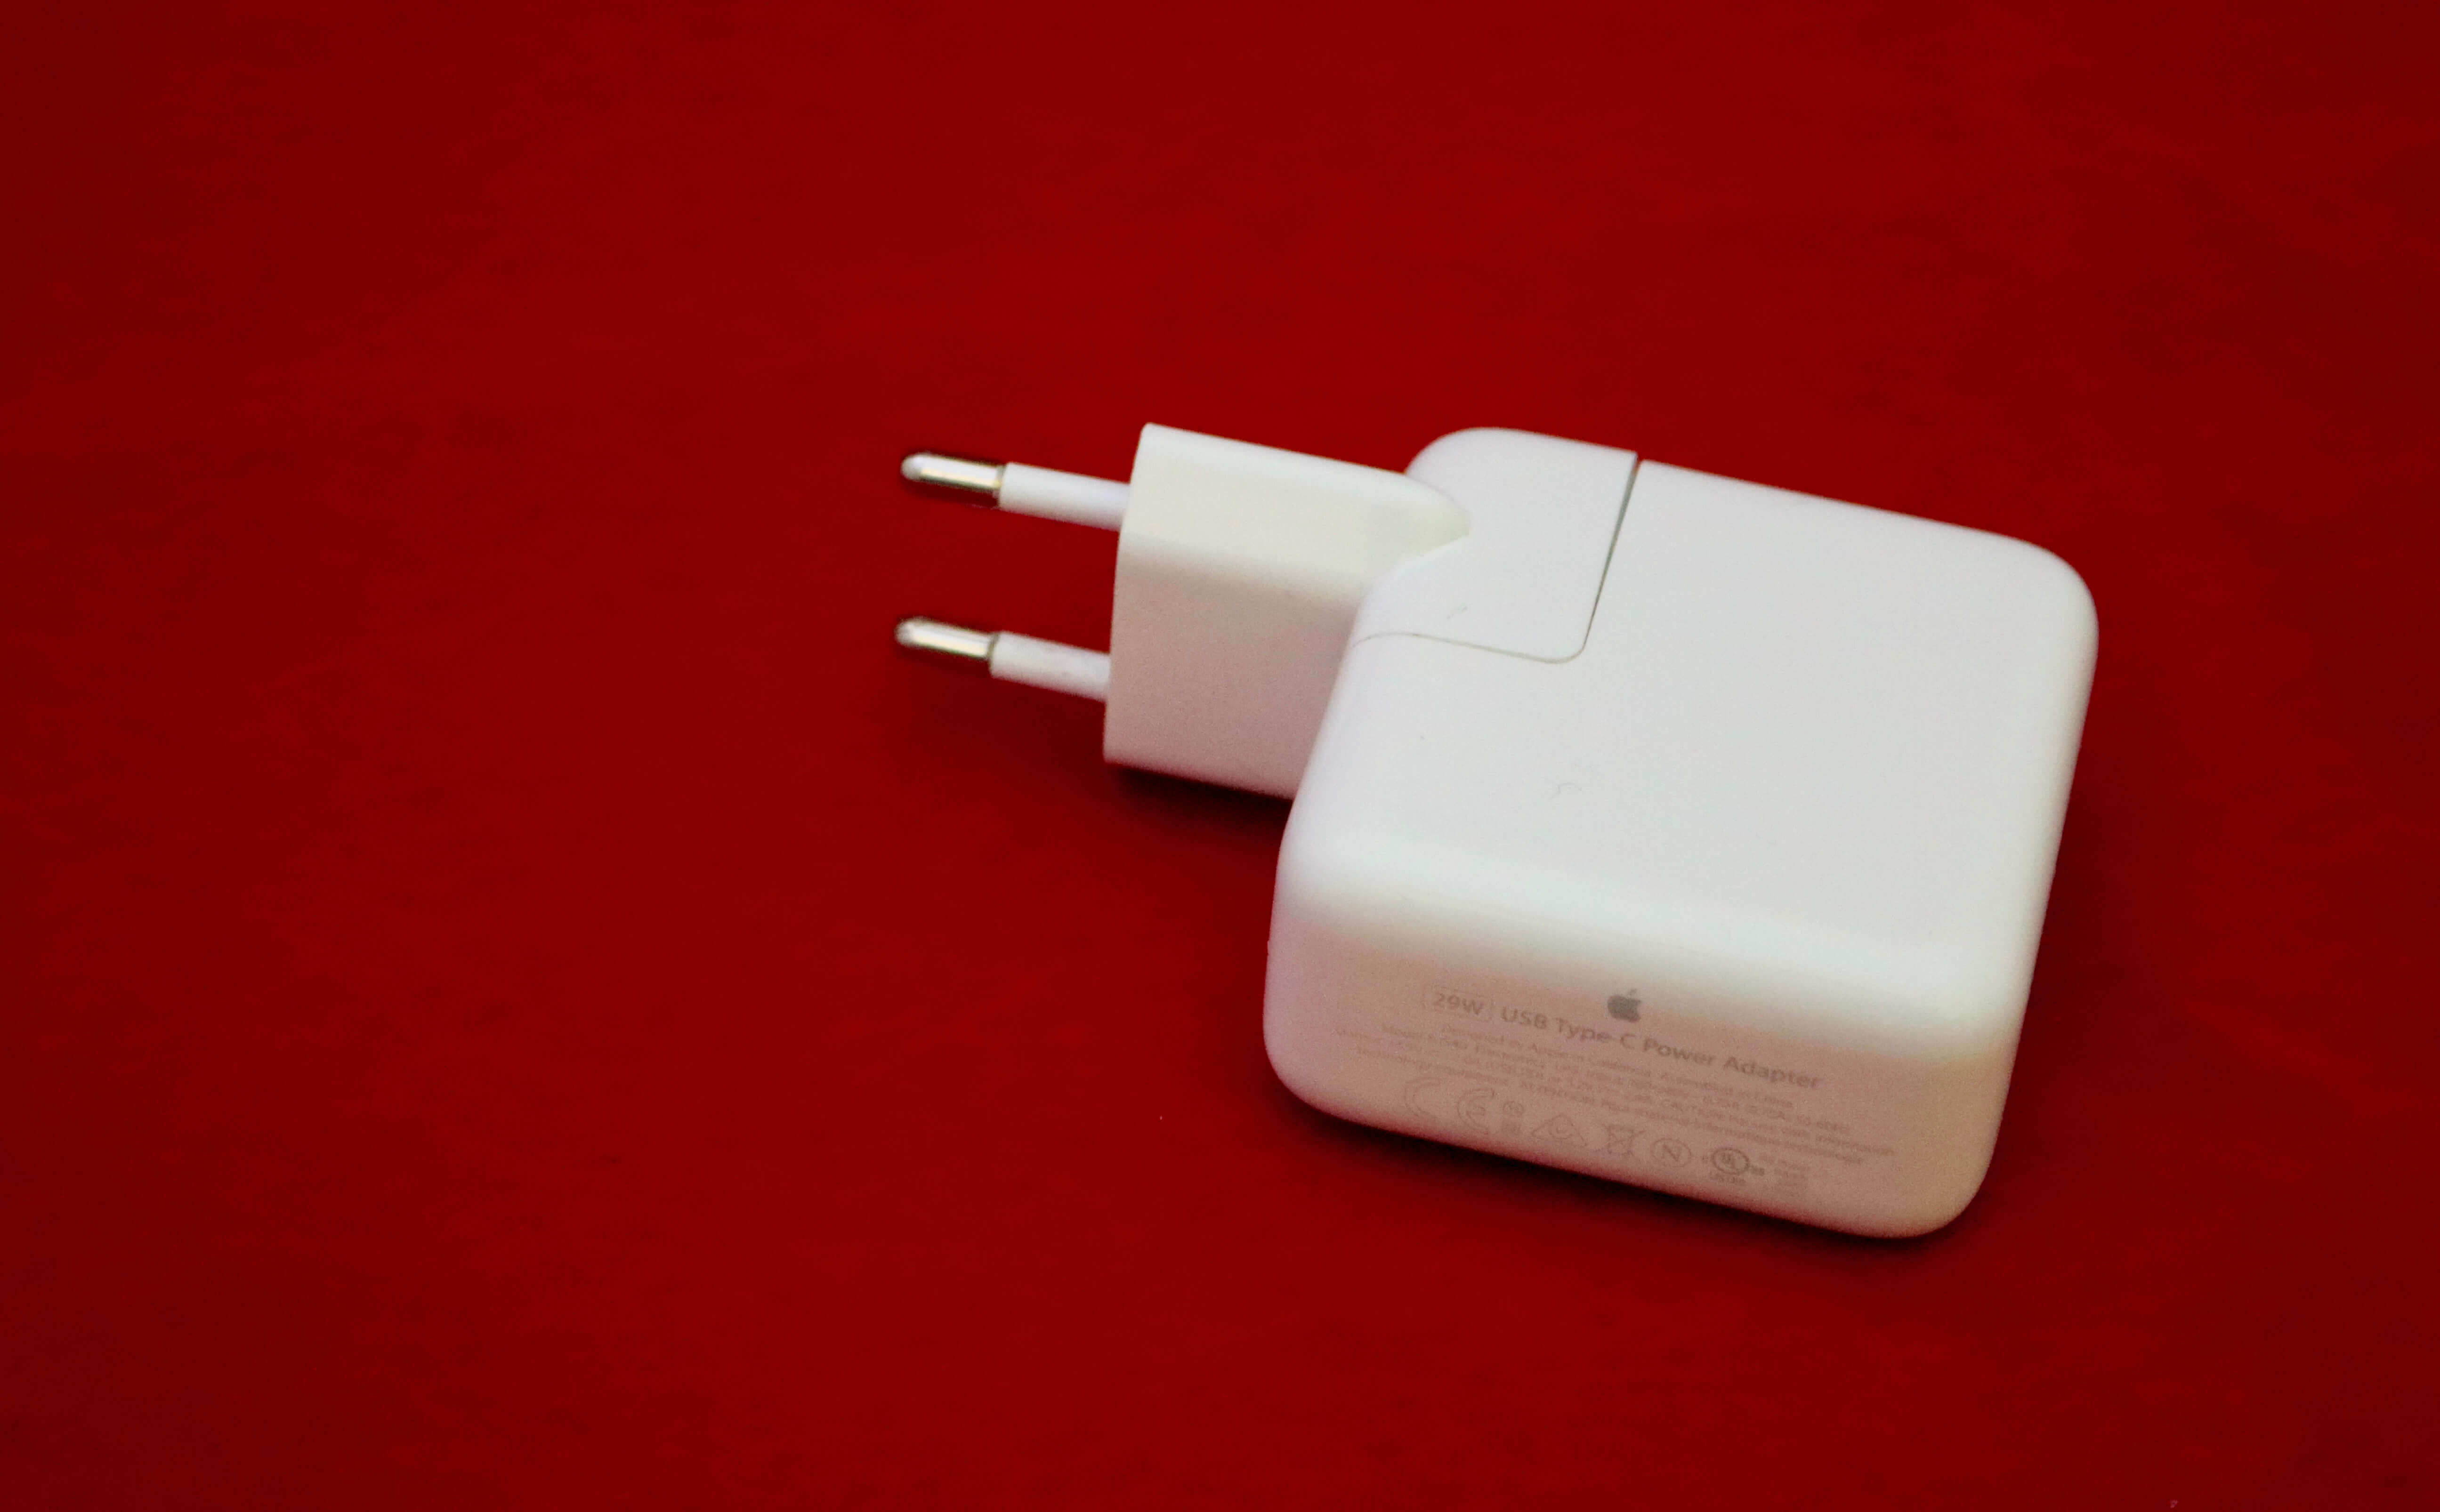 De 29w adapter is Apple's goedkoopste oplossing voor het snelladen van je iPhone of iPad